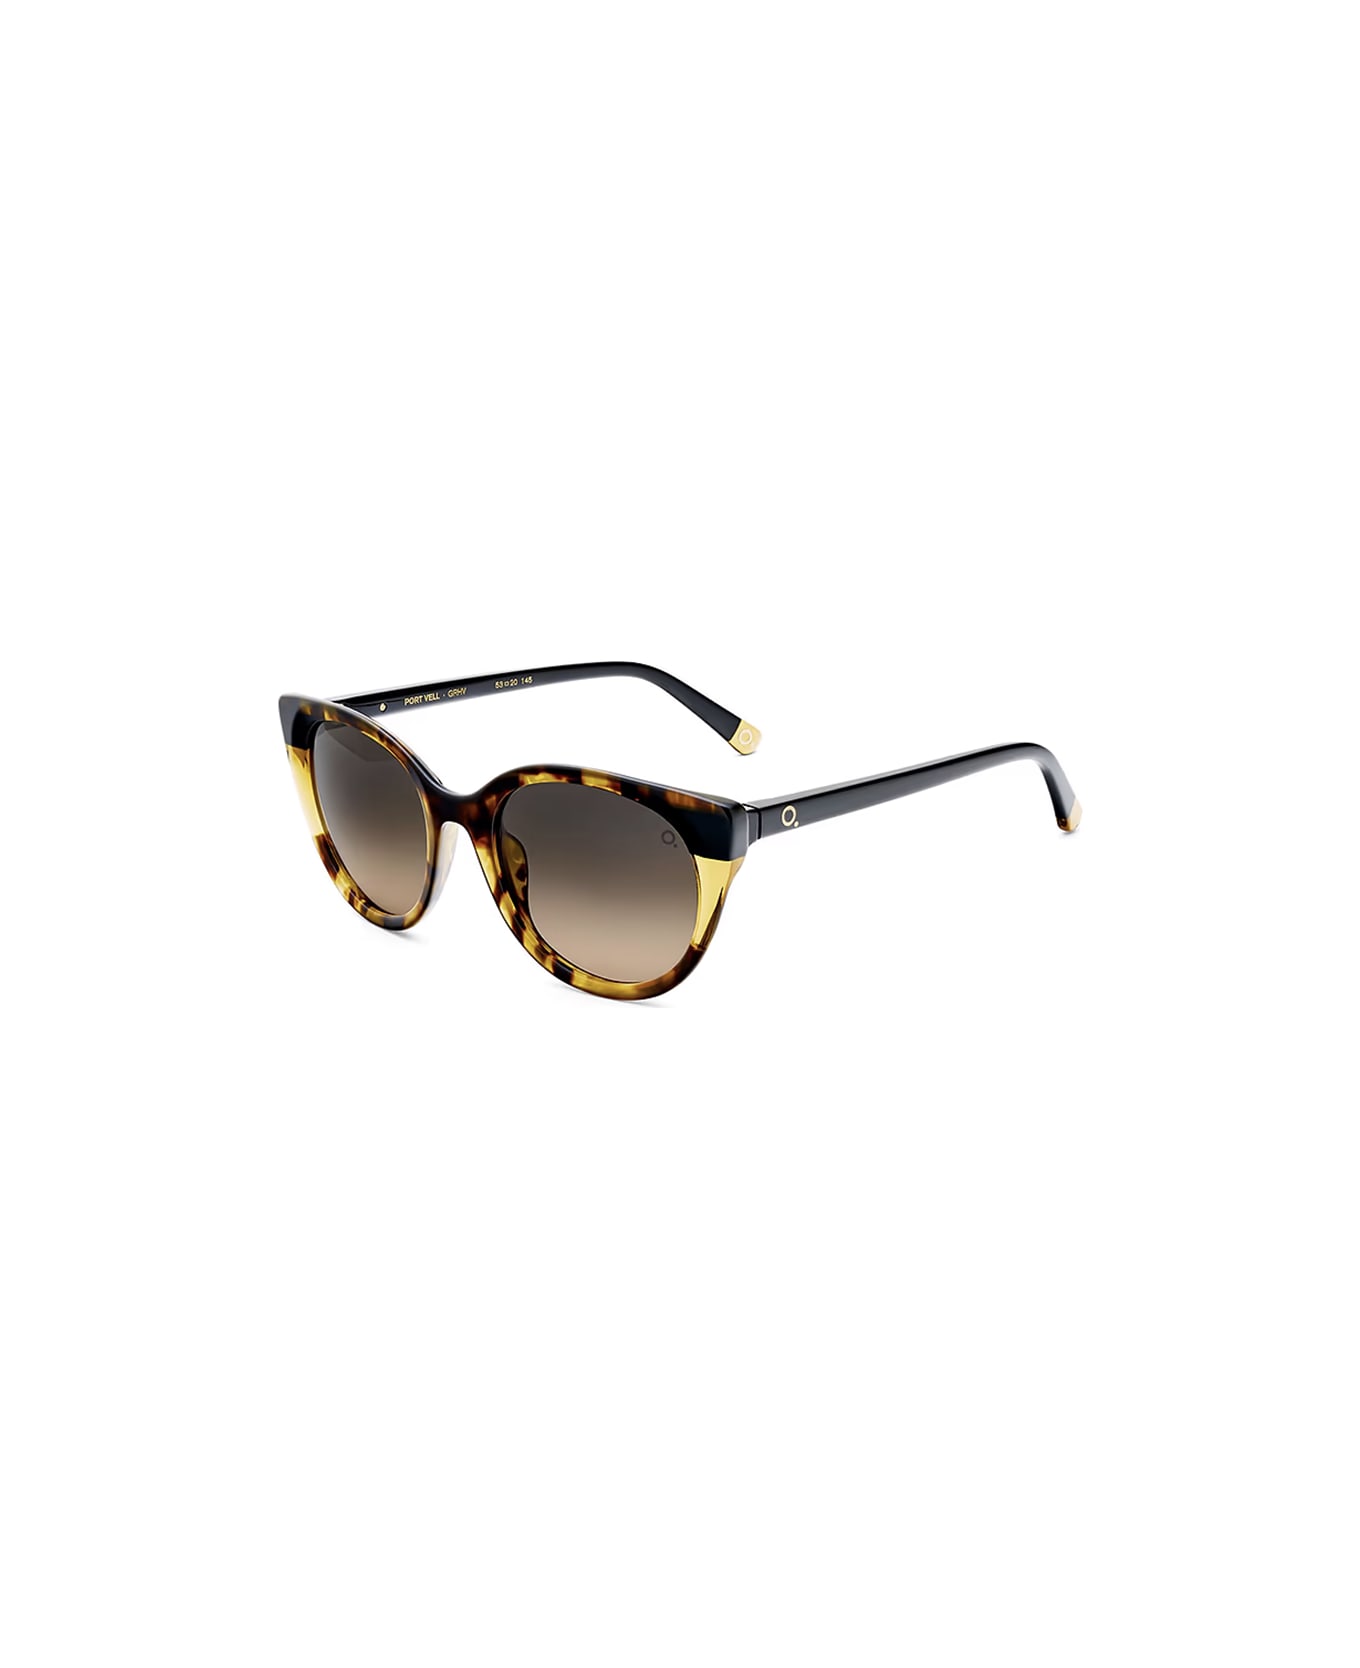 Etnia Barcelona Sunglasses - Multicolor/Grigio